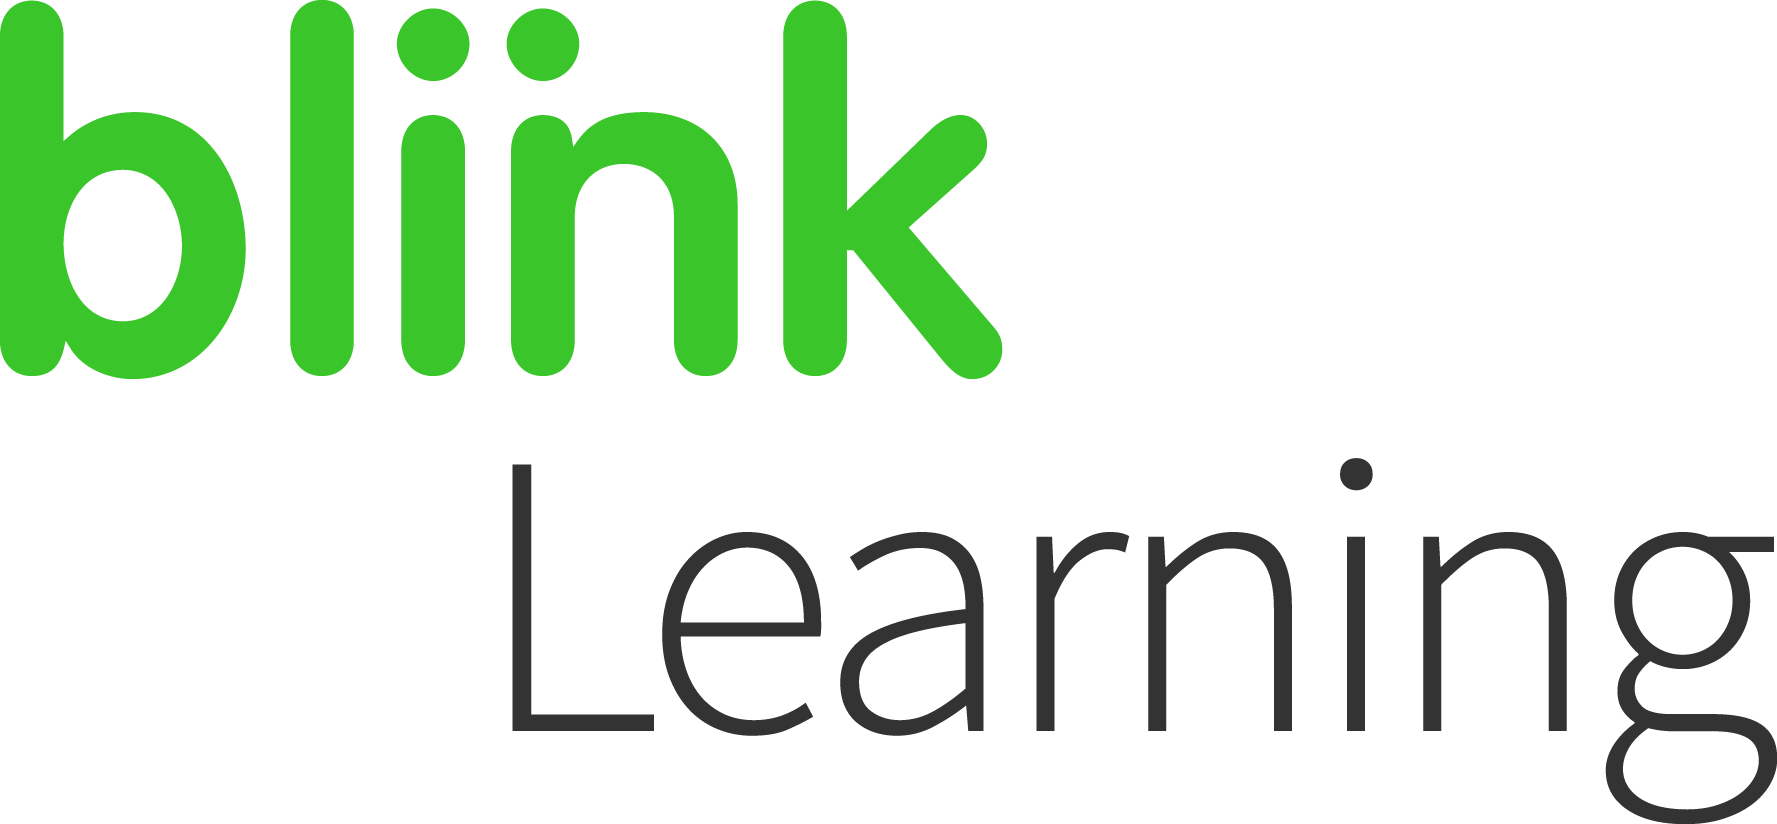 https://www.cambridge.org/files/6515/3320/3607/BLINK_logo_blinklearning_POS.png